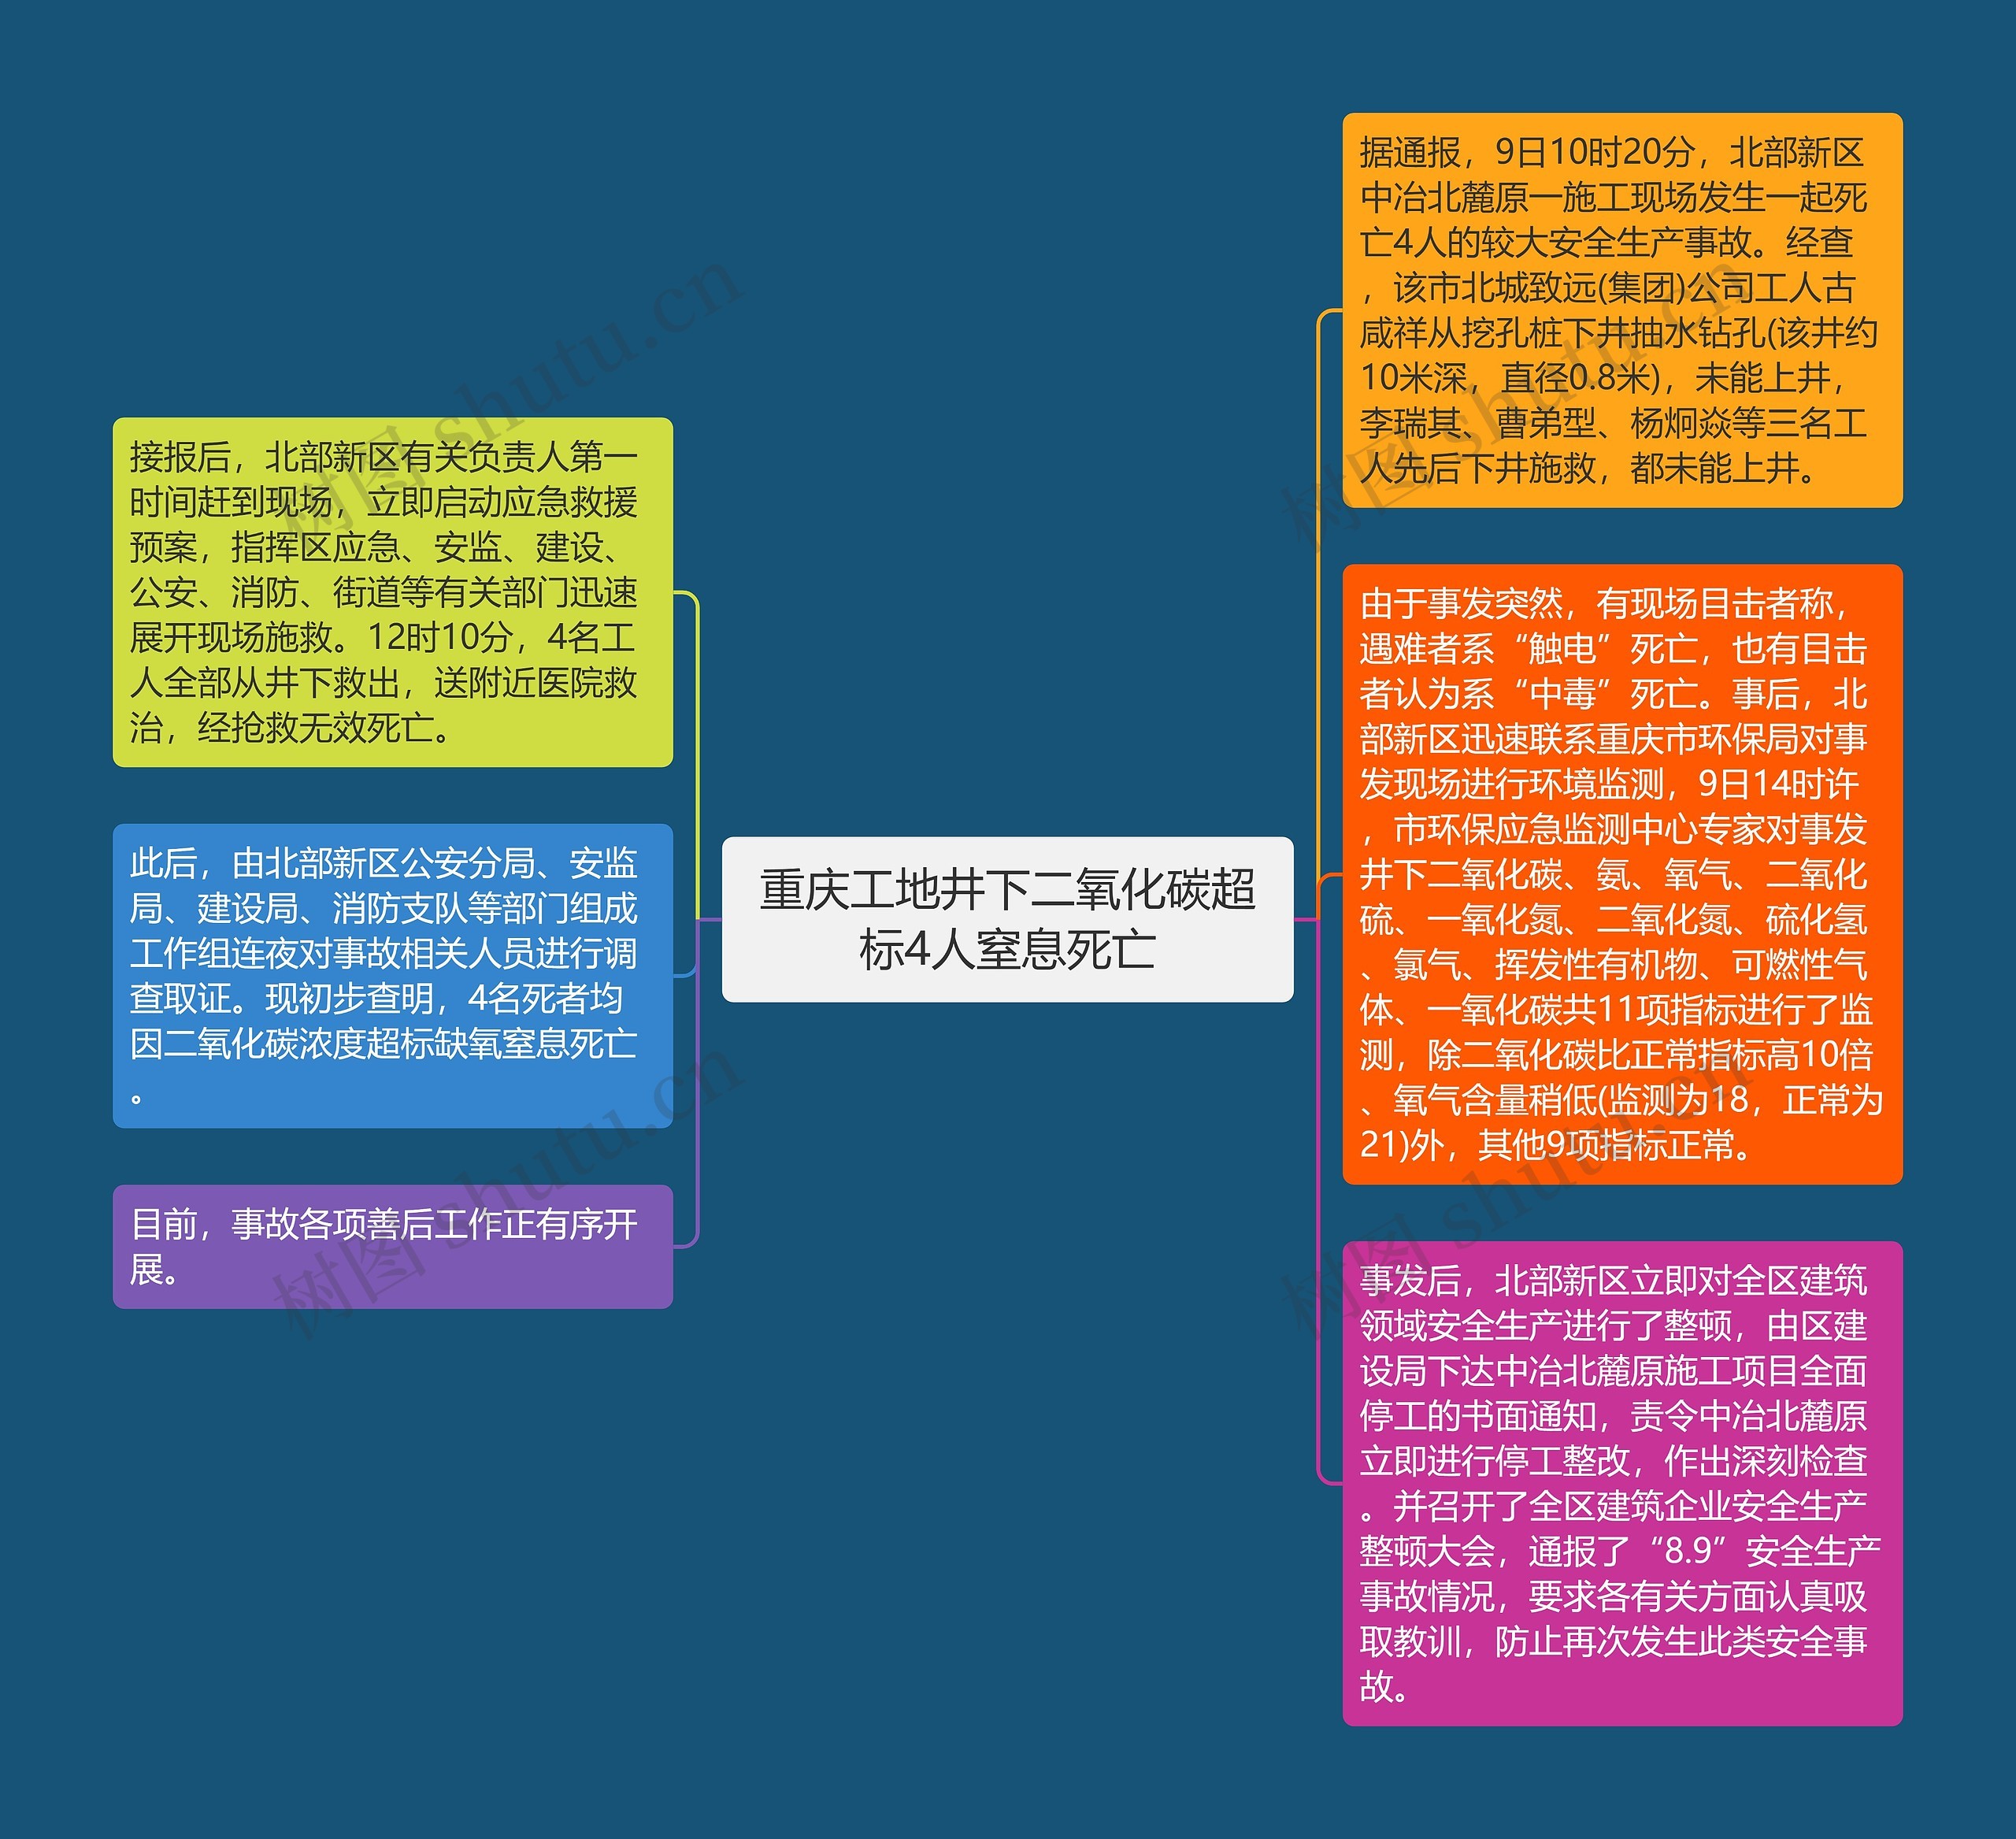 重庆工地井下二氧化碳超标4人窒息死亡思维导图